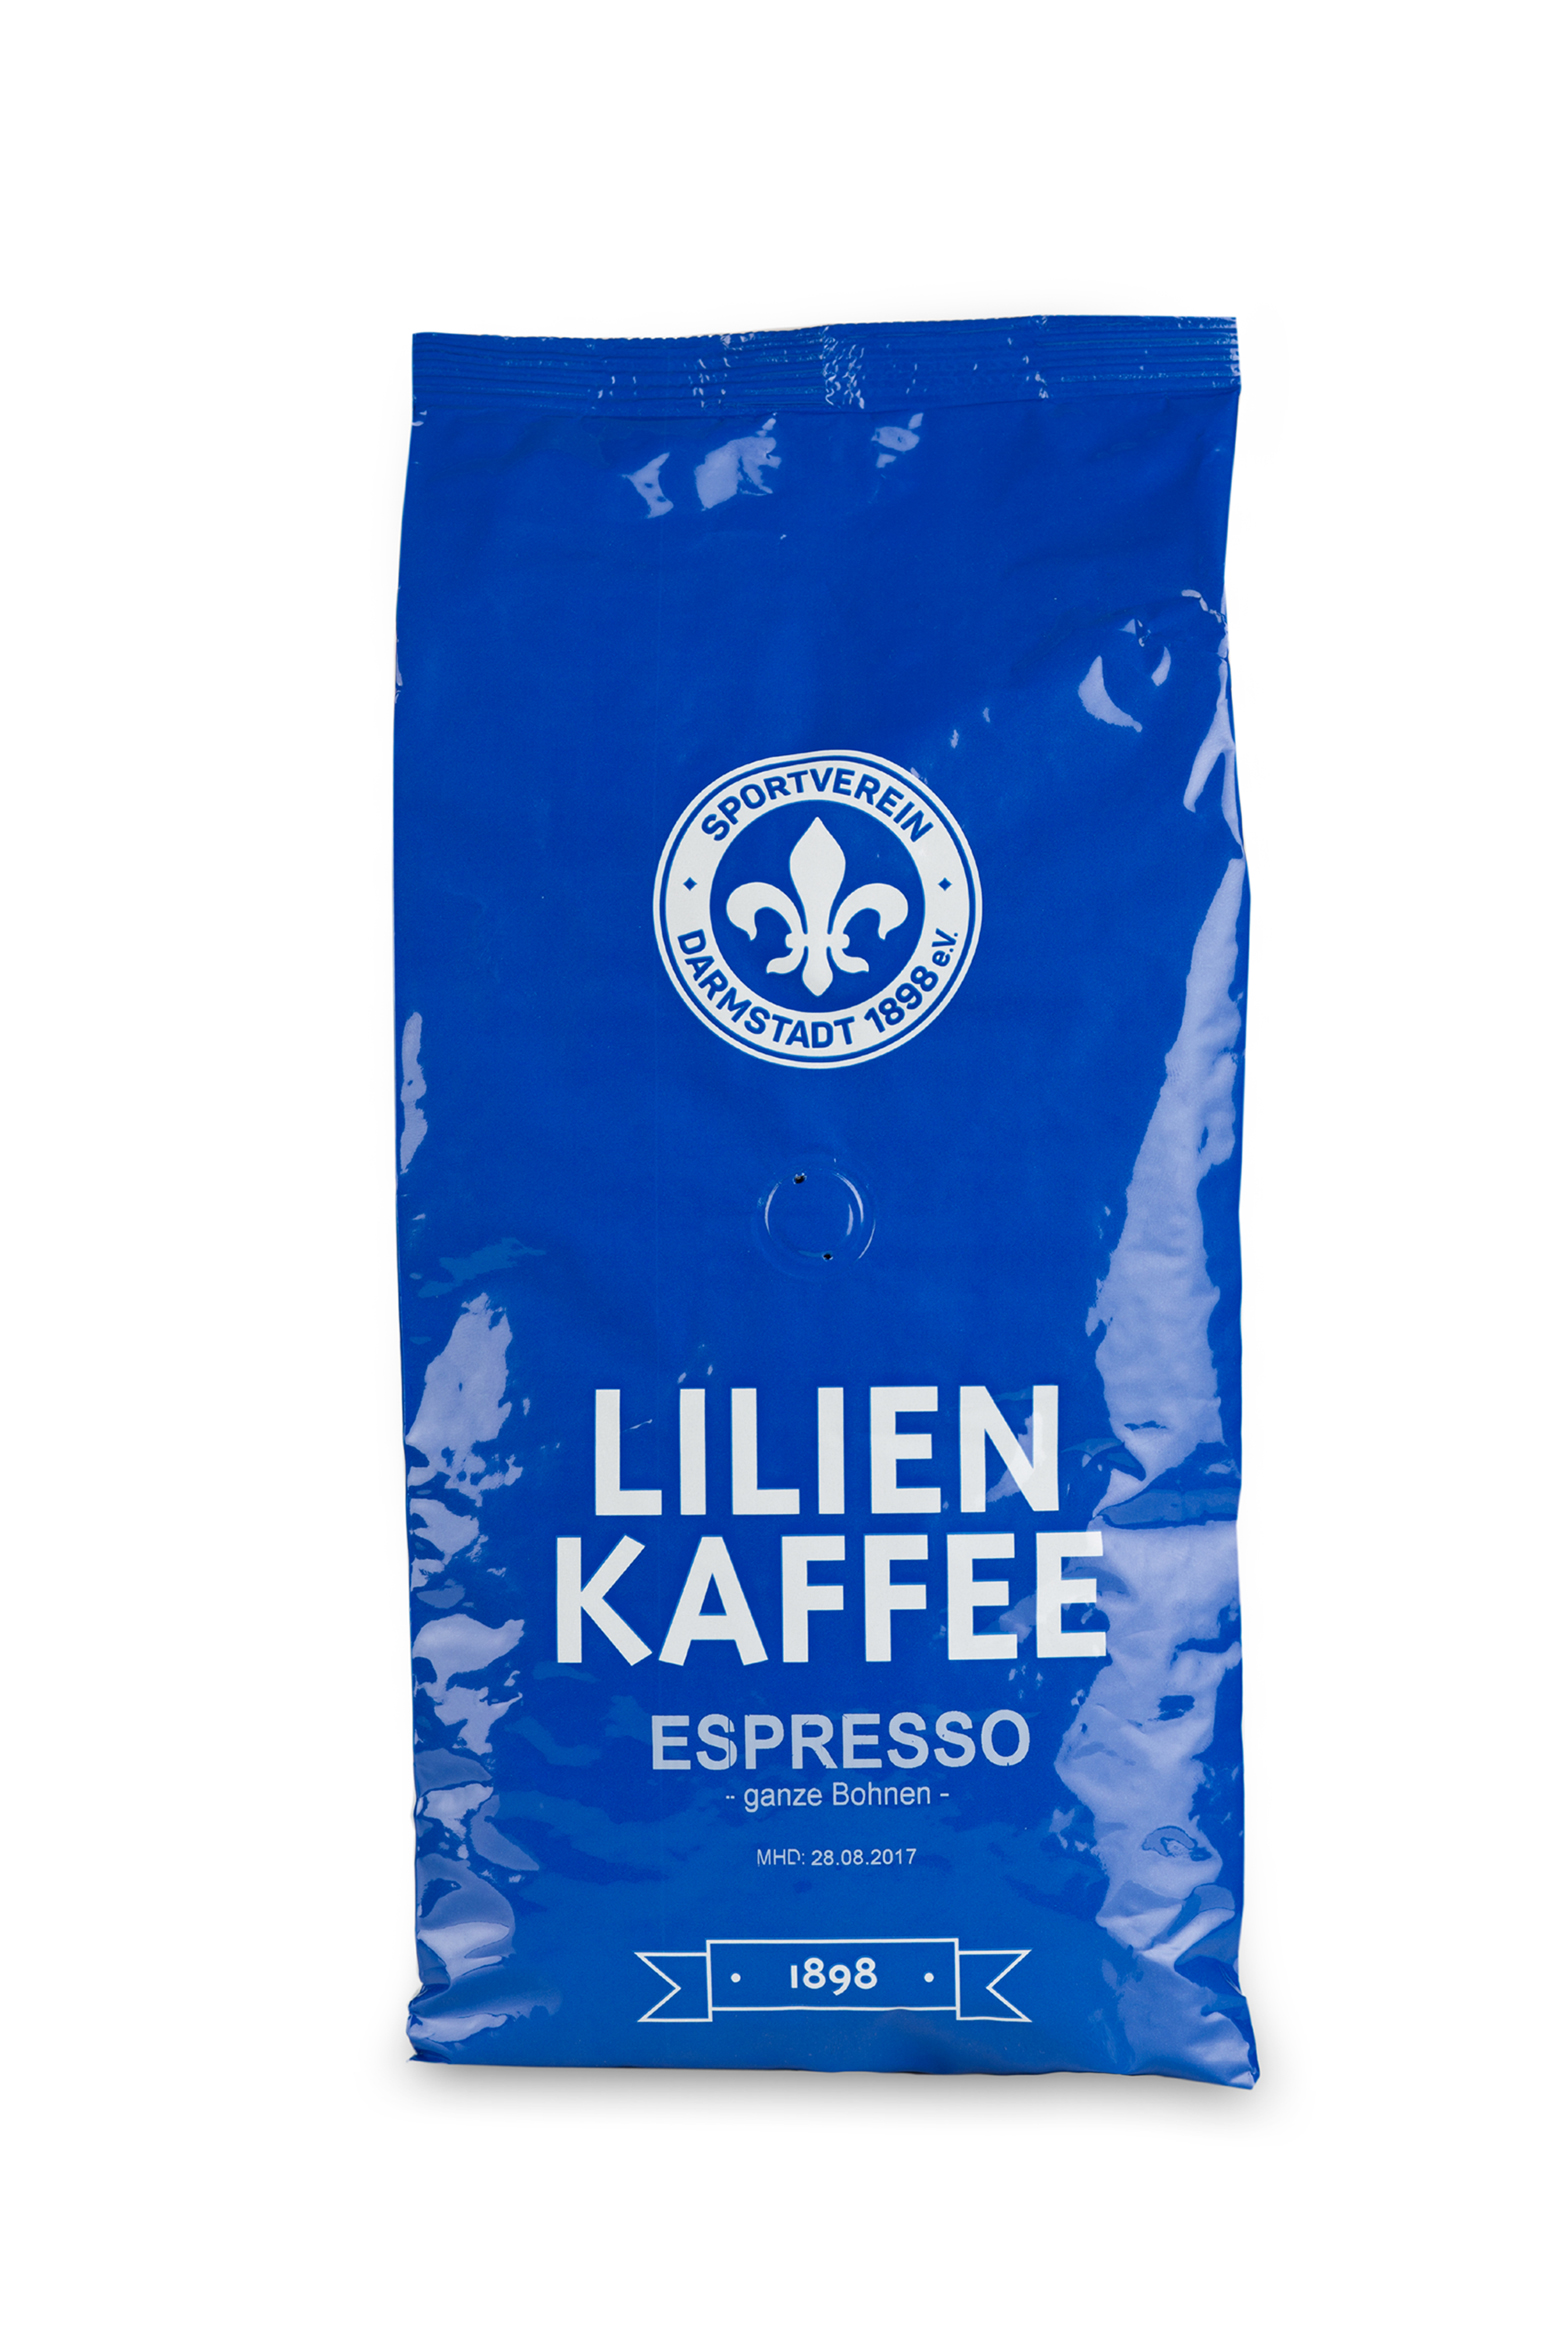 Lilien-Kaffee "Espresso"